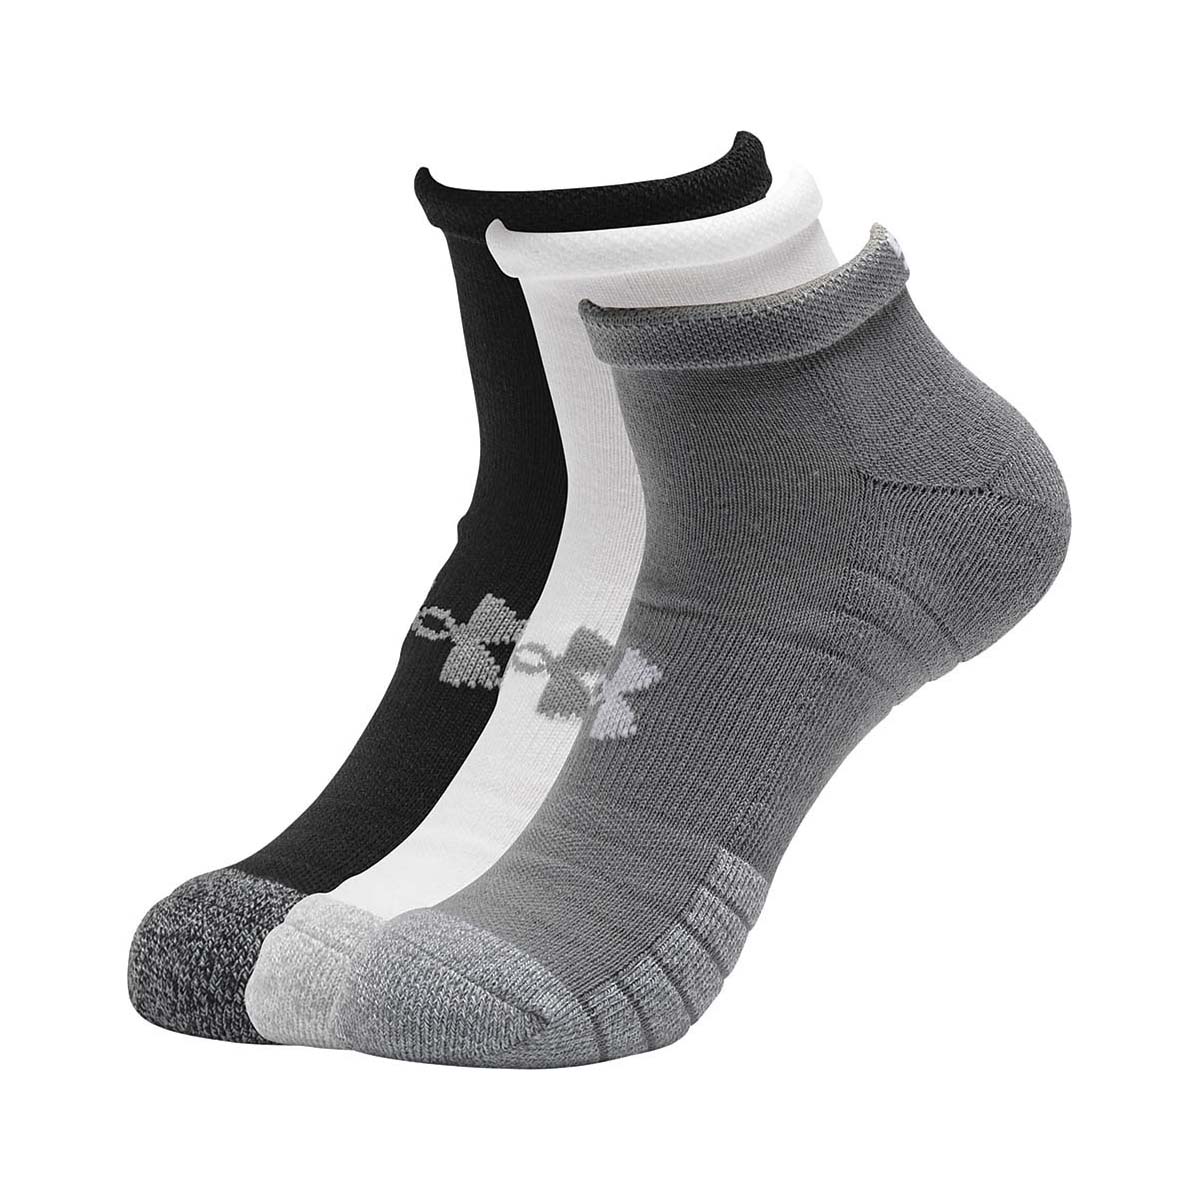 Under Armour Men's HeatGear Lo Cut Socks 3 Pack Steel / White L